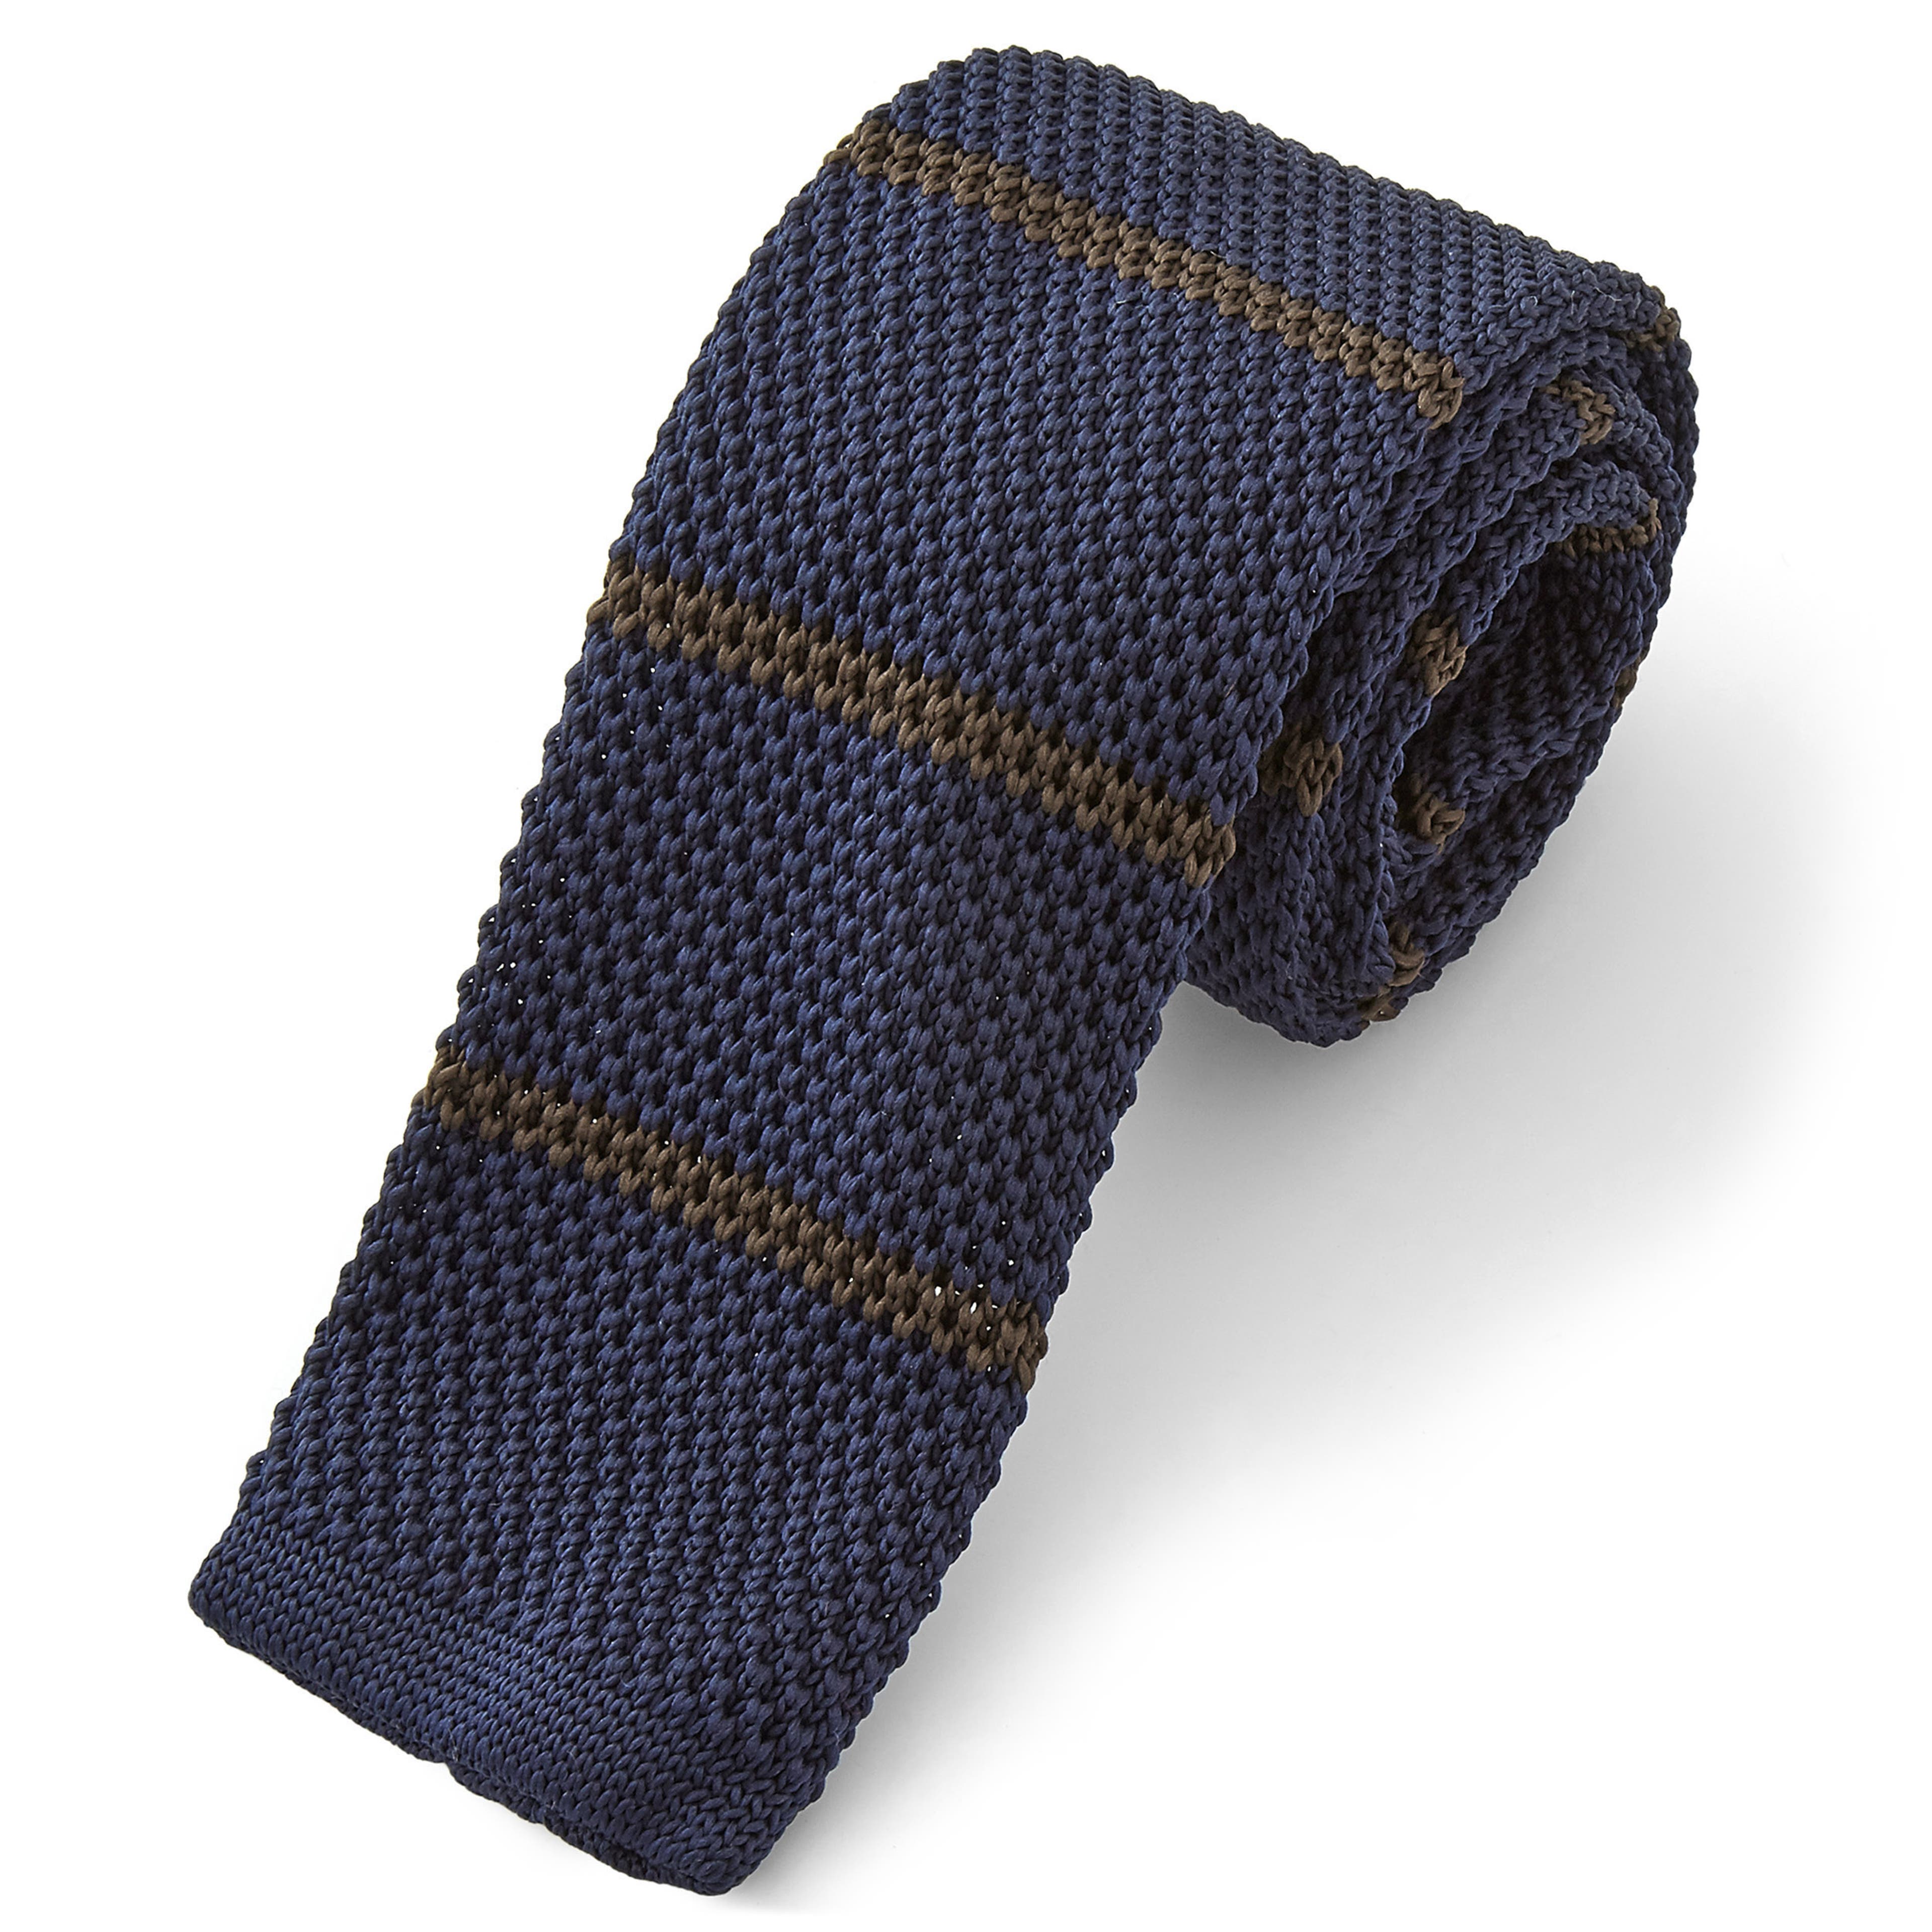 Cravatta blu navy e marrone lavorata a maglia